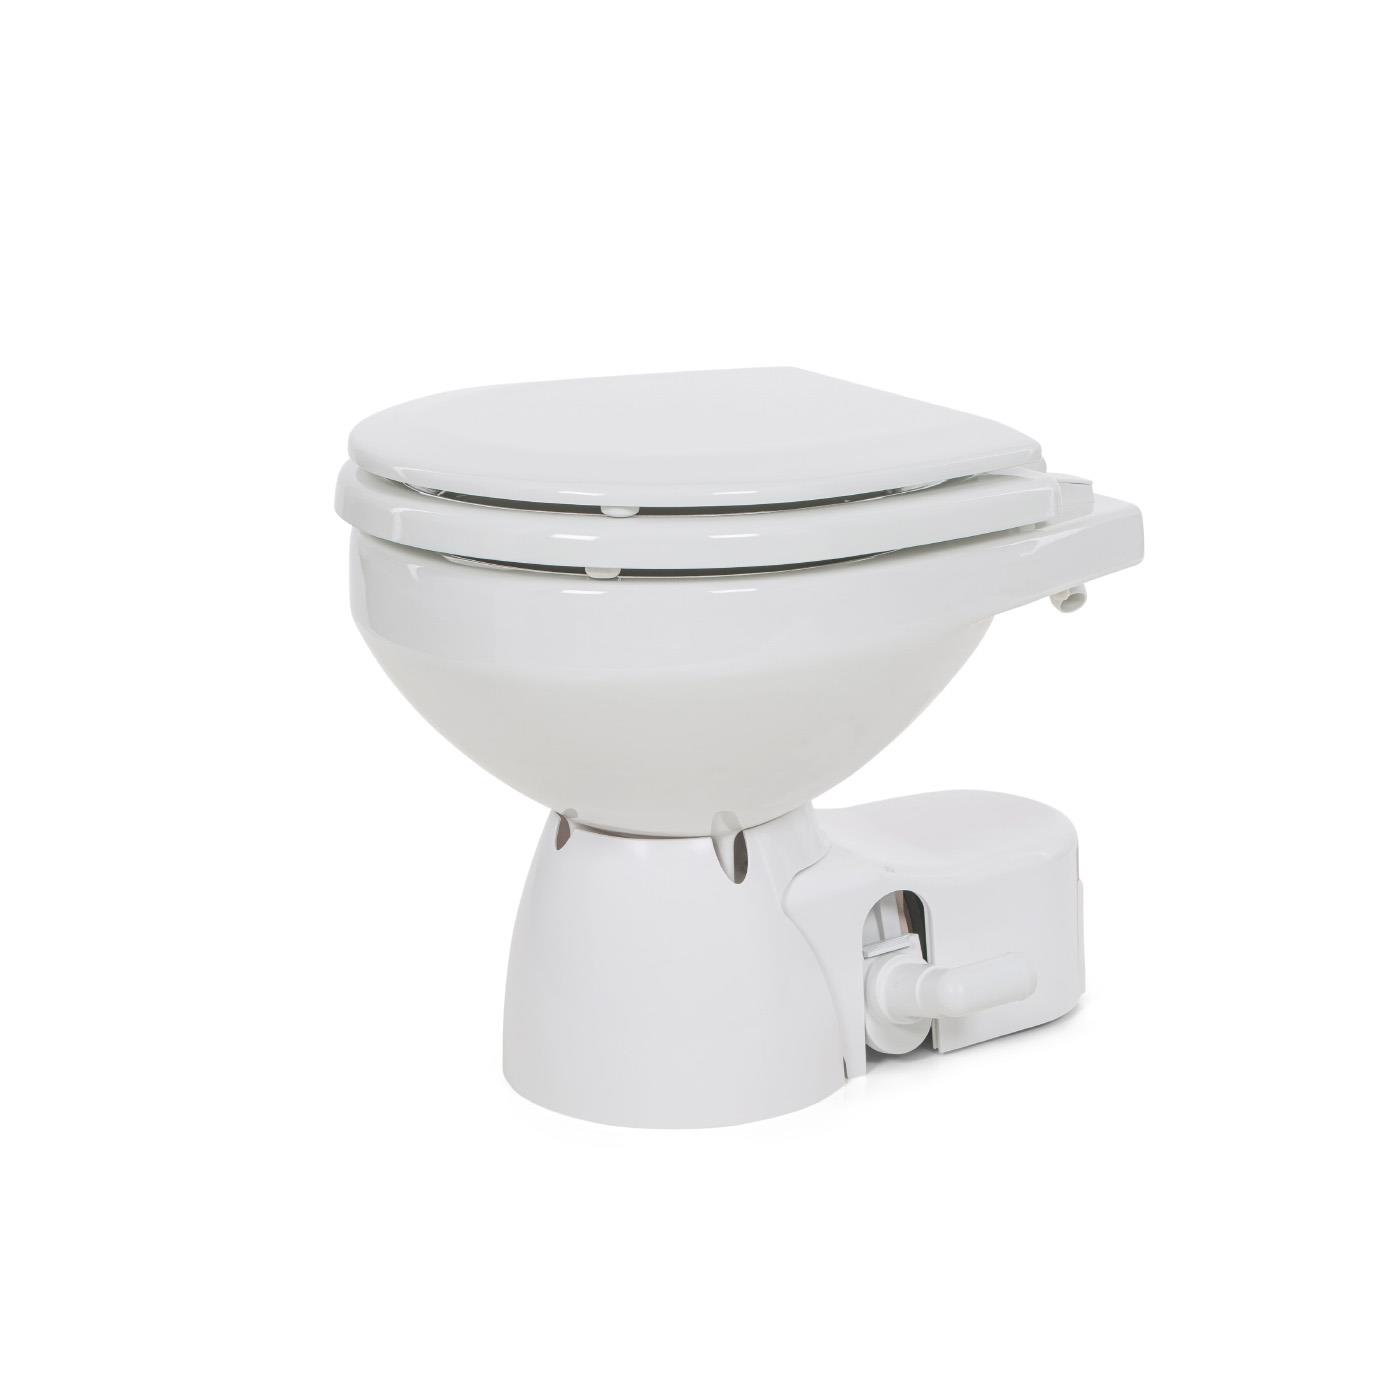 Jabsco Quiet Flush E2 Elektrische Toilette mit Spülpumpe, Kompaktgröße, 12V